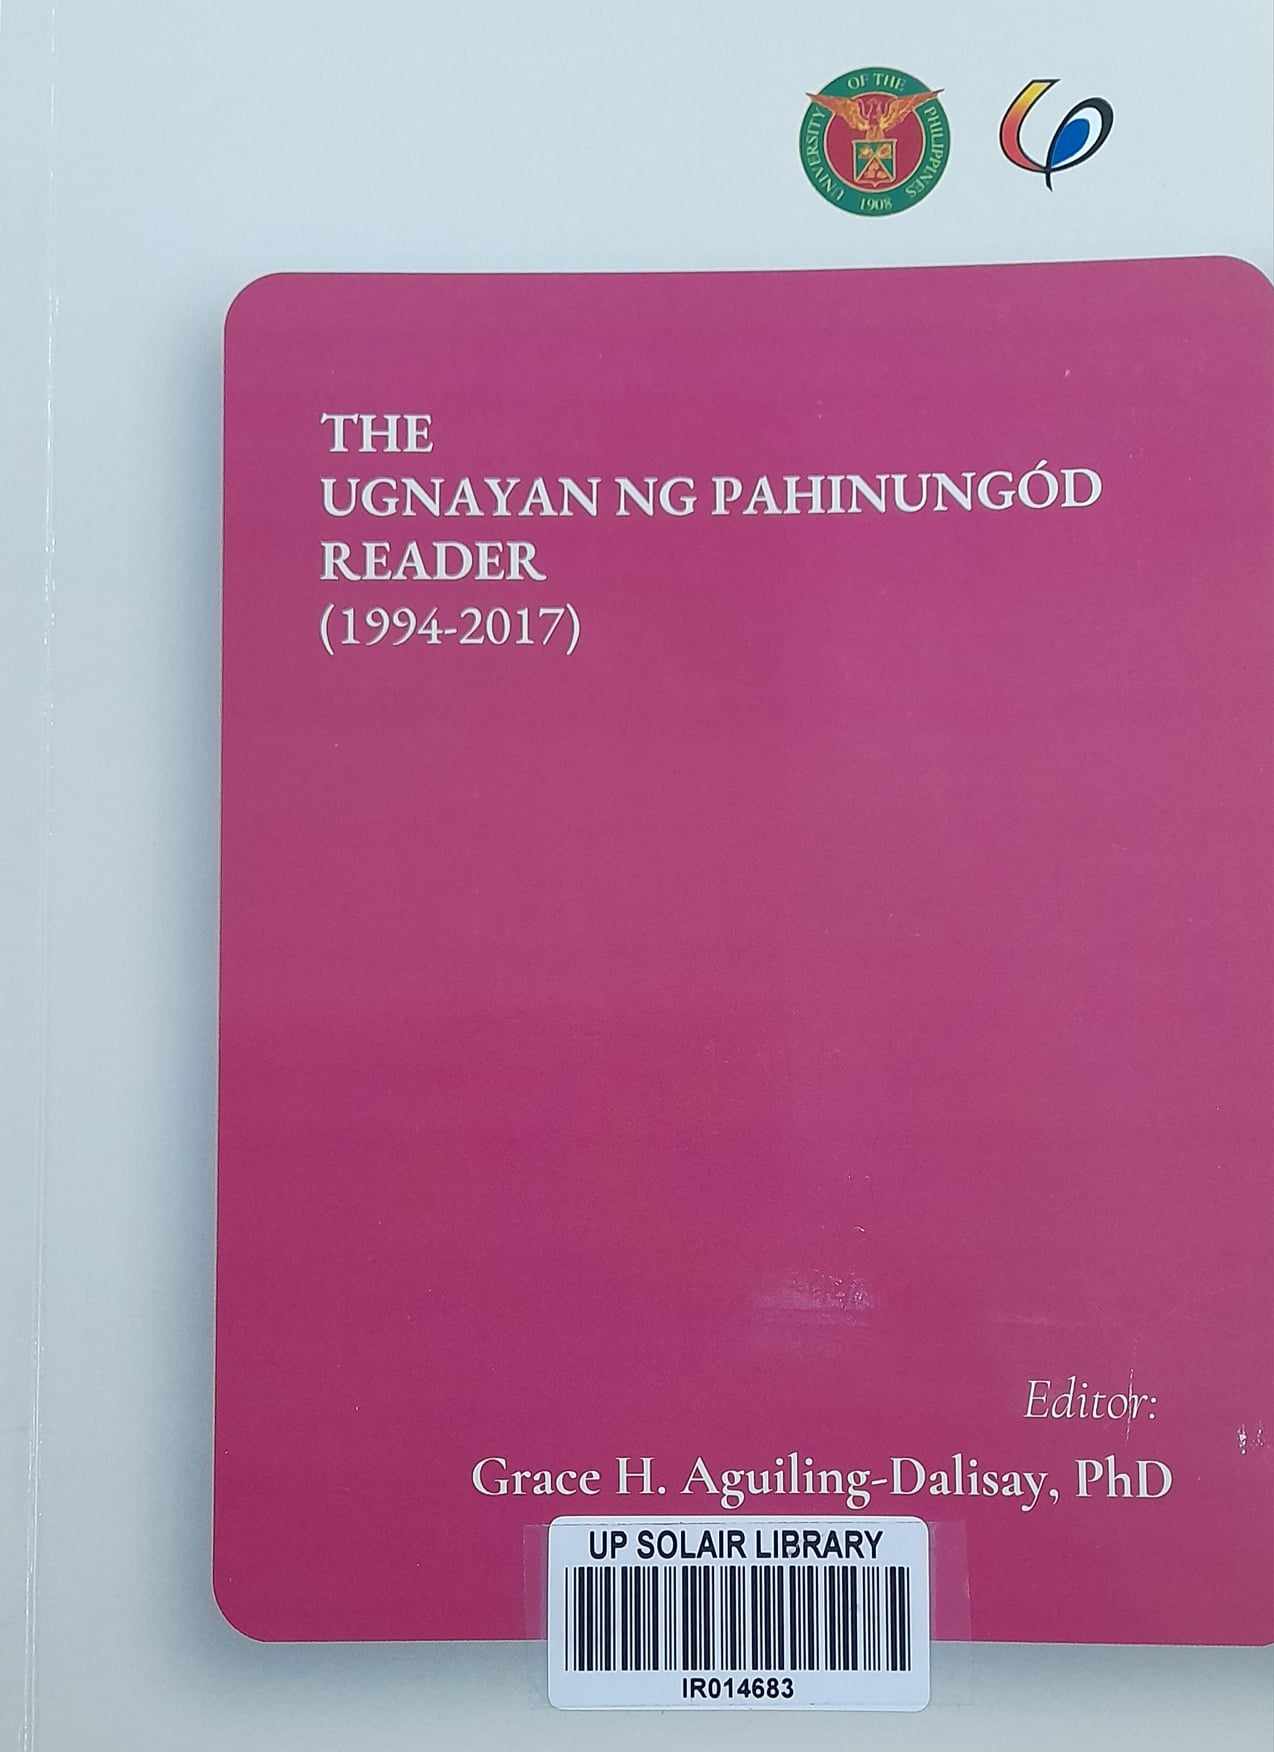 The Ugnayan ng Pahinungod reader (1994-2017)